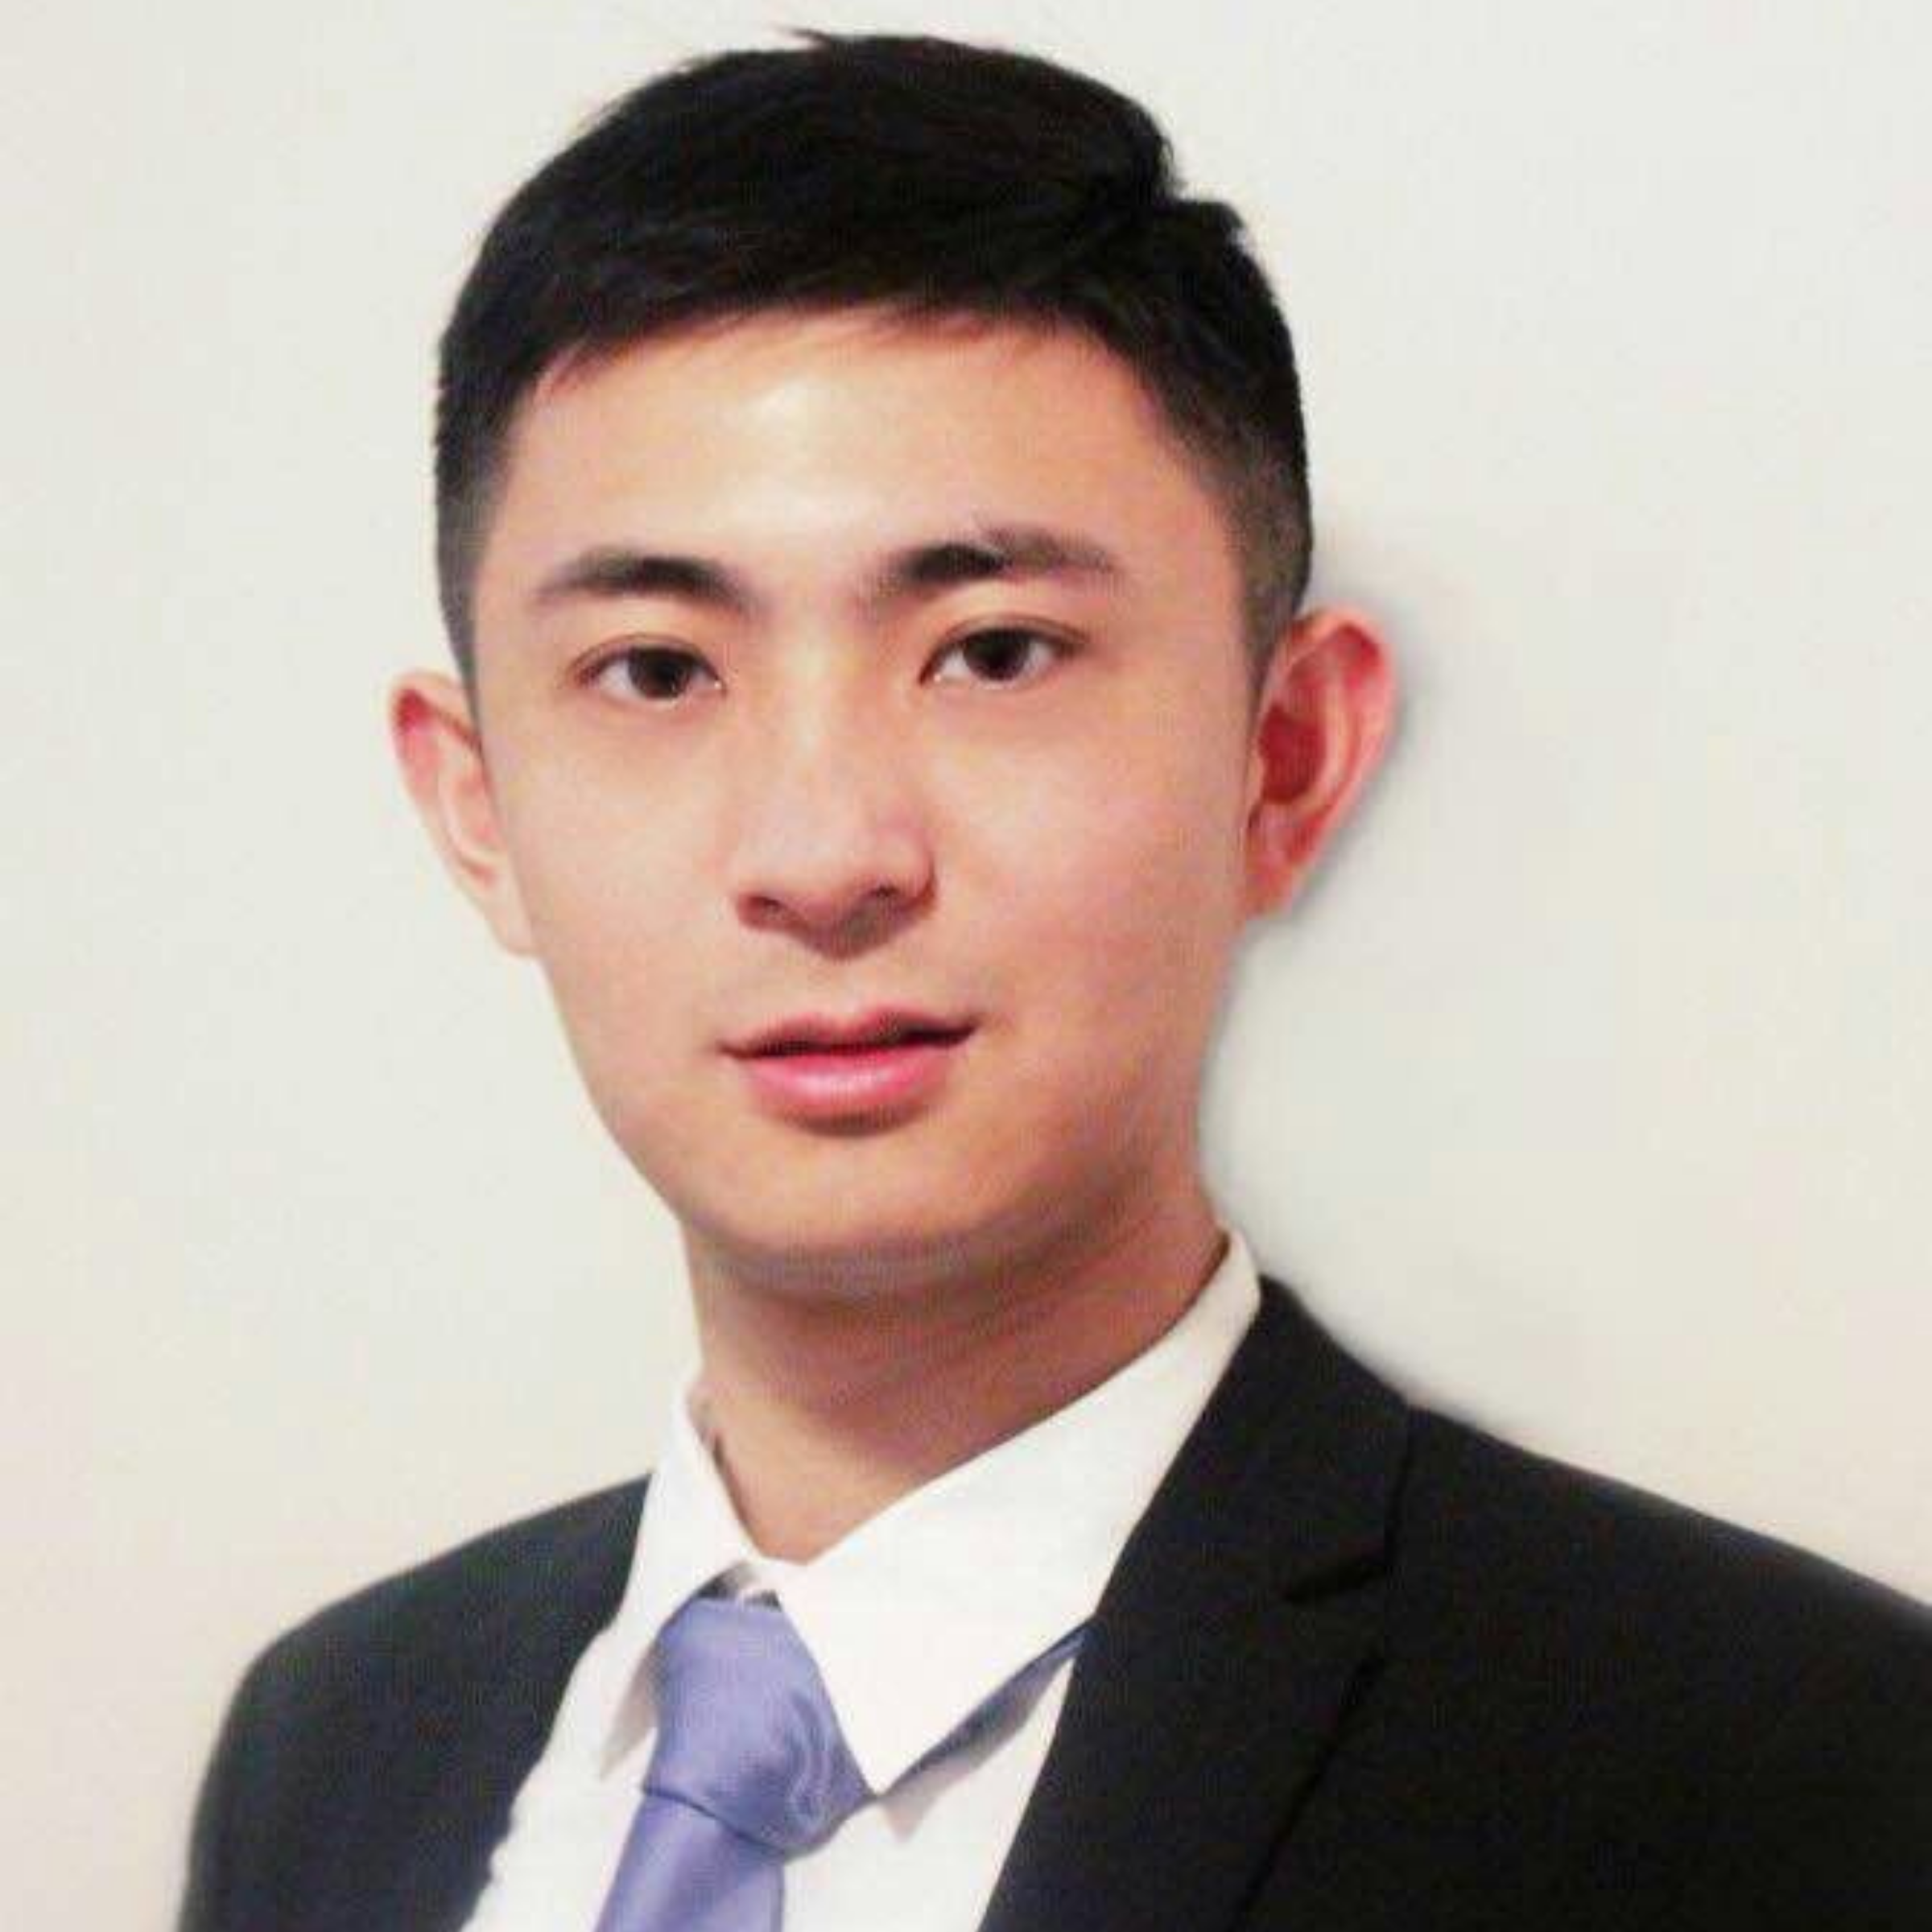 Profile image of Shujian "Steve" Zhang